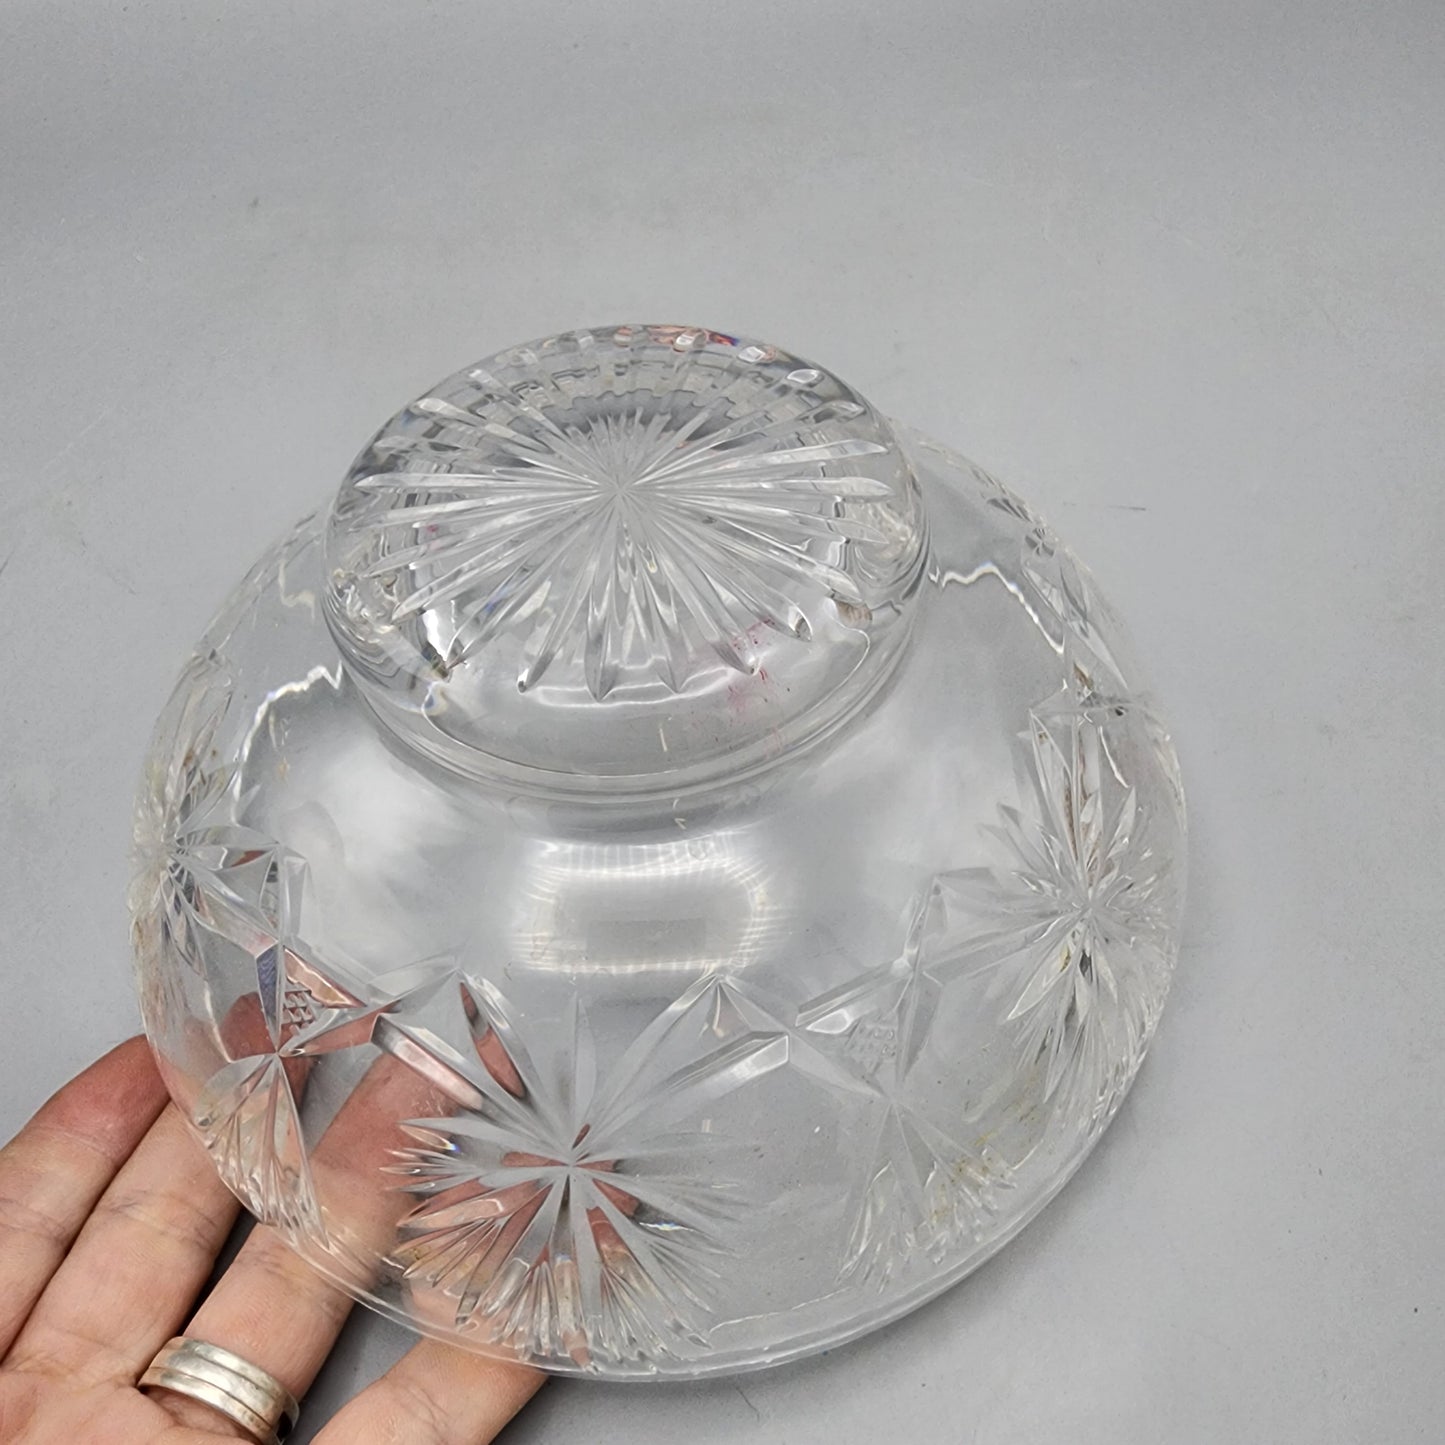 Vintage Cut Crystal Bowl